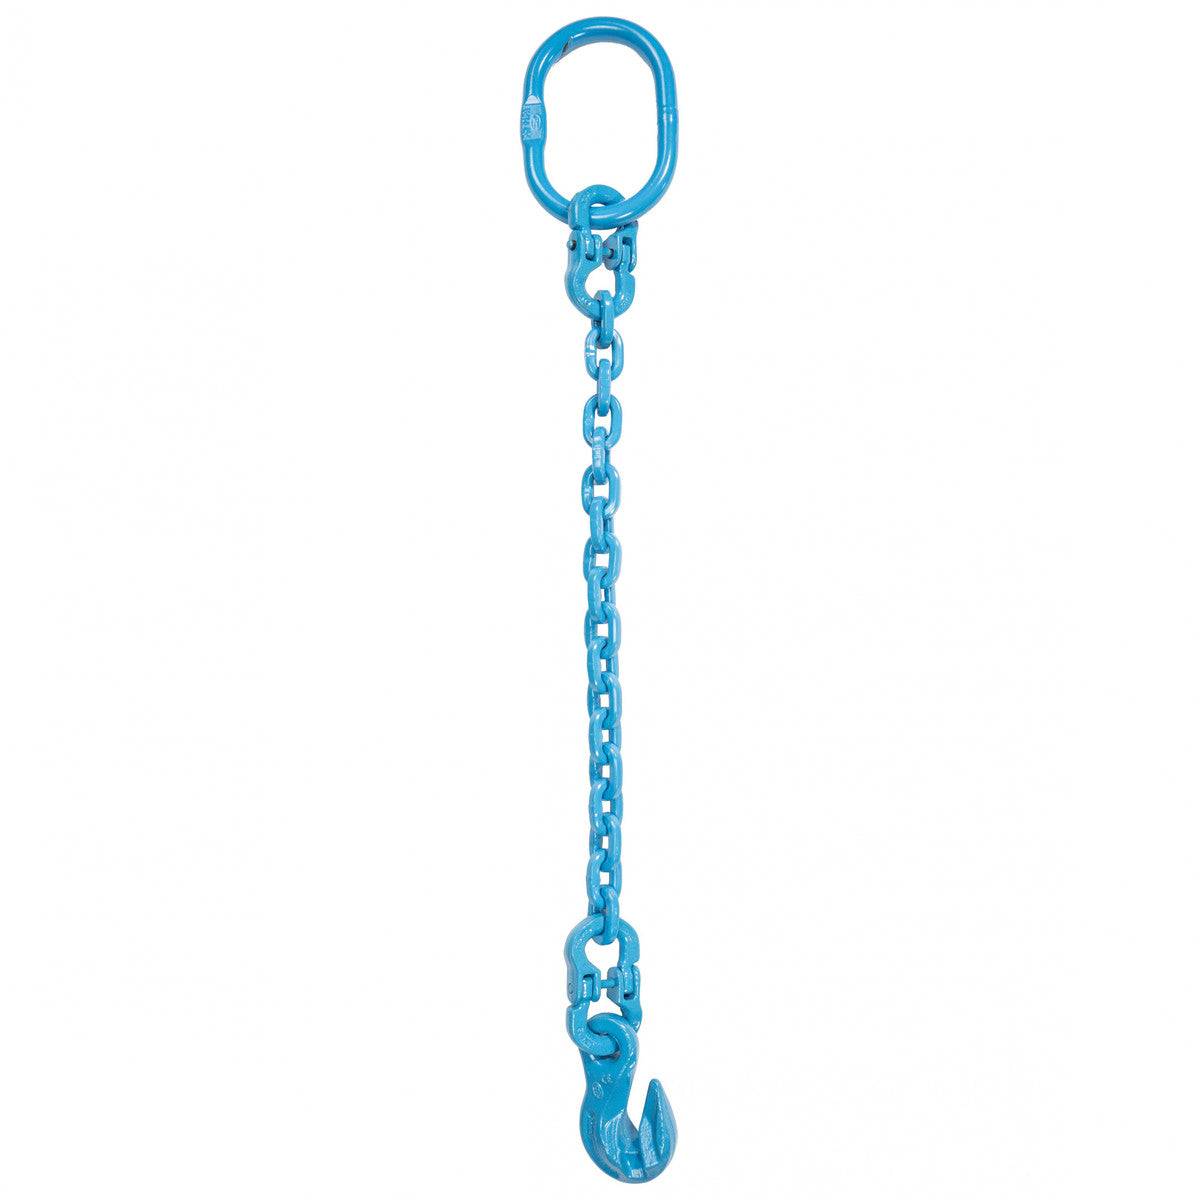 9/32" x 10' - Pewag Single Leg Chain Sling w/ Grab Hook - Grade 120